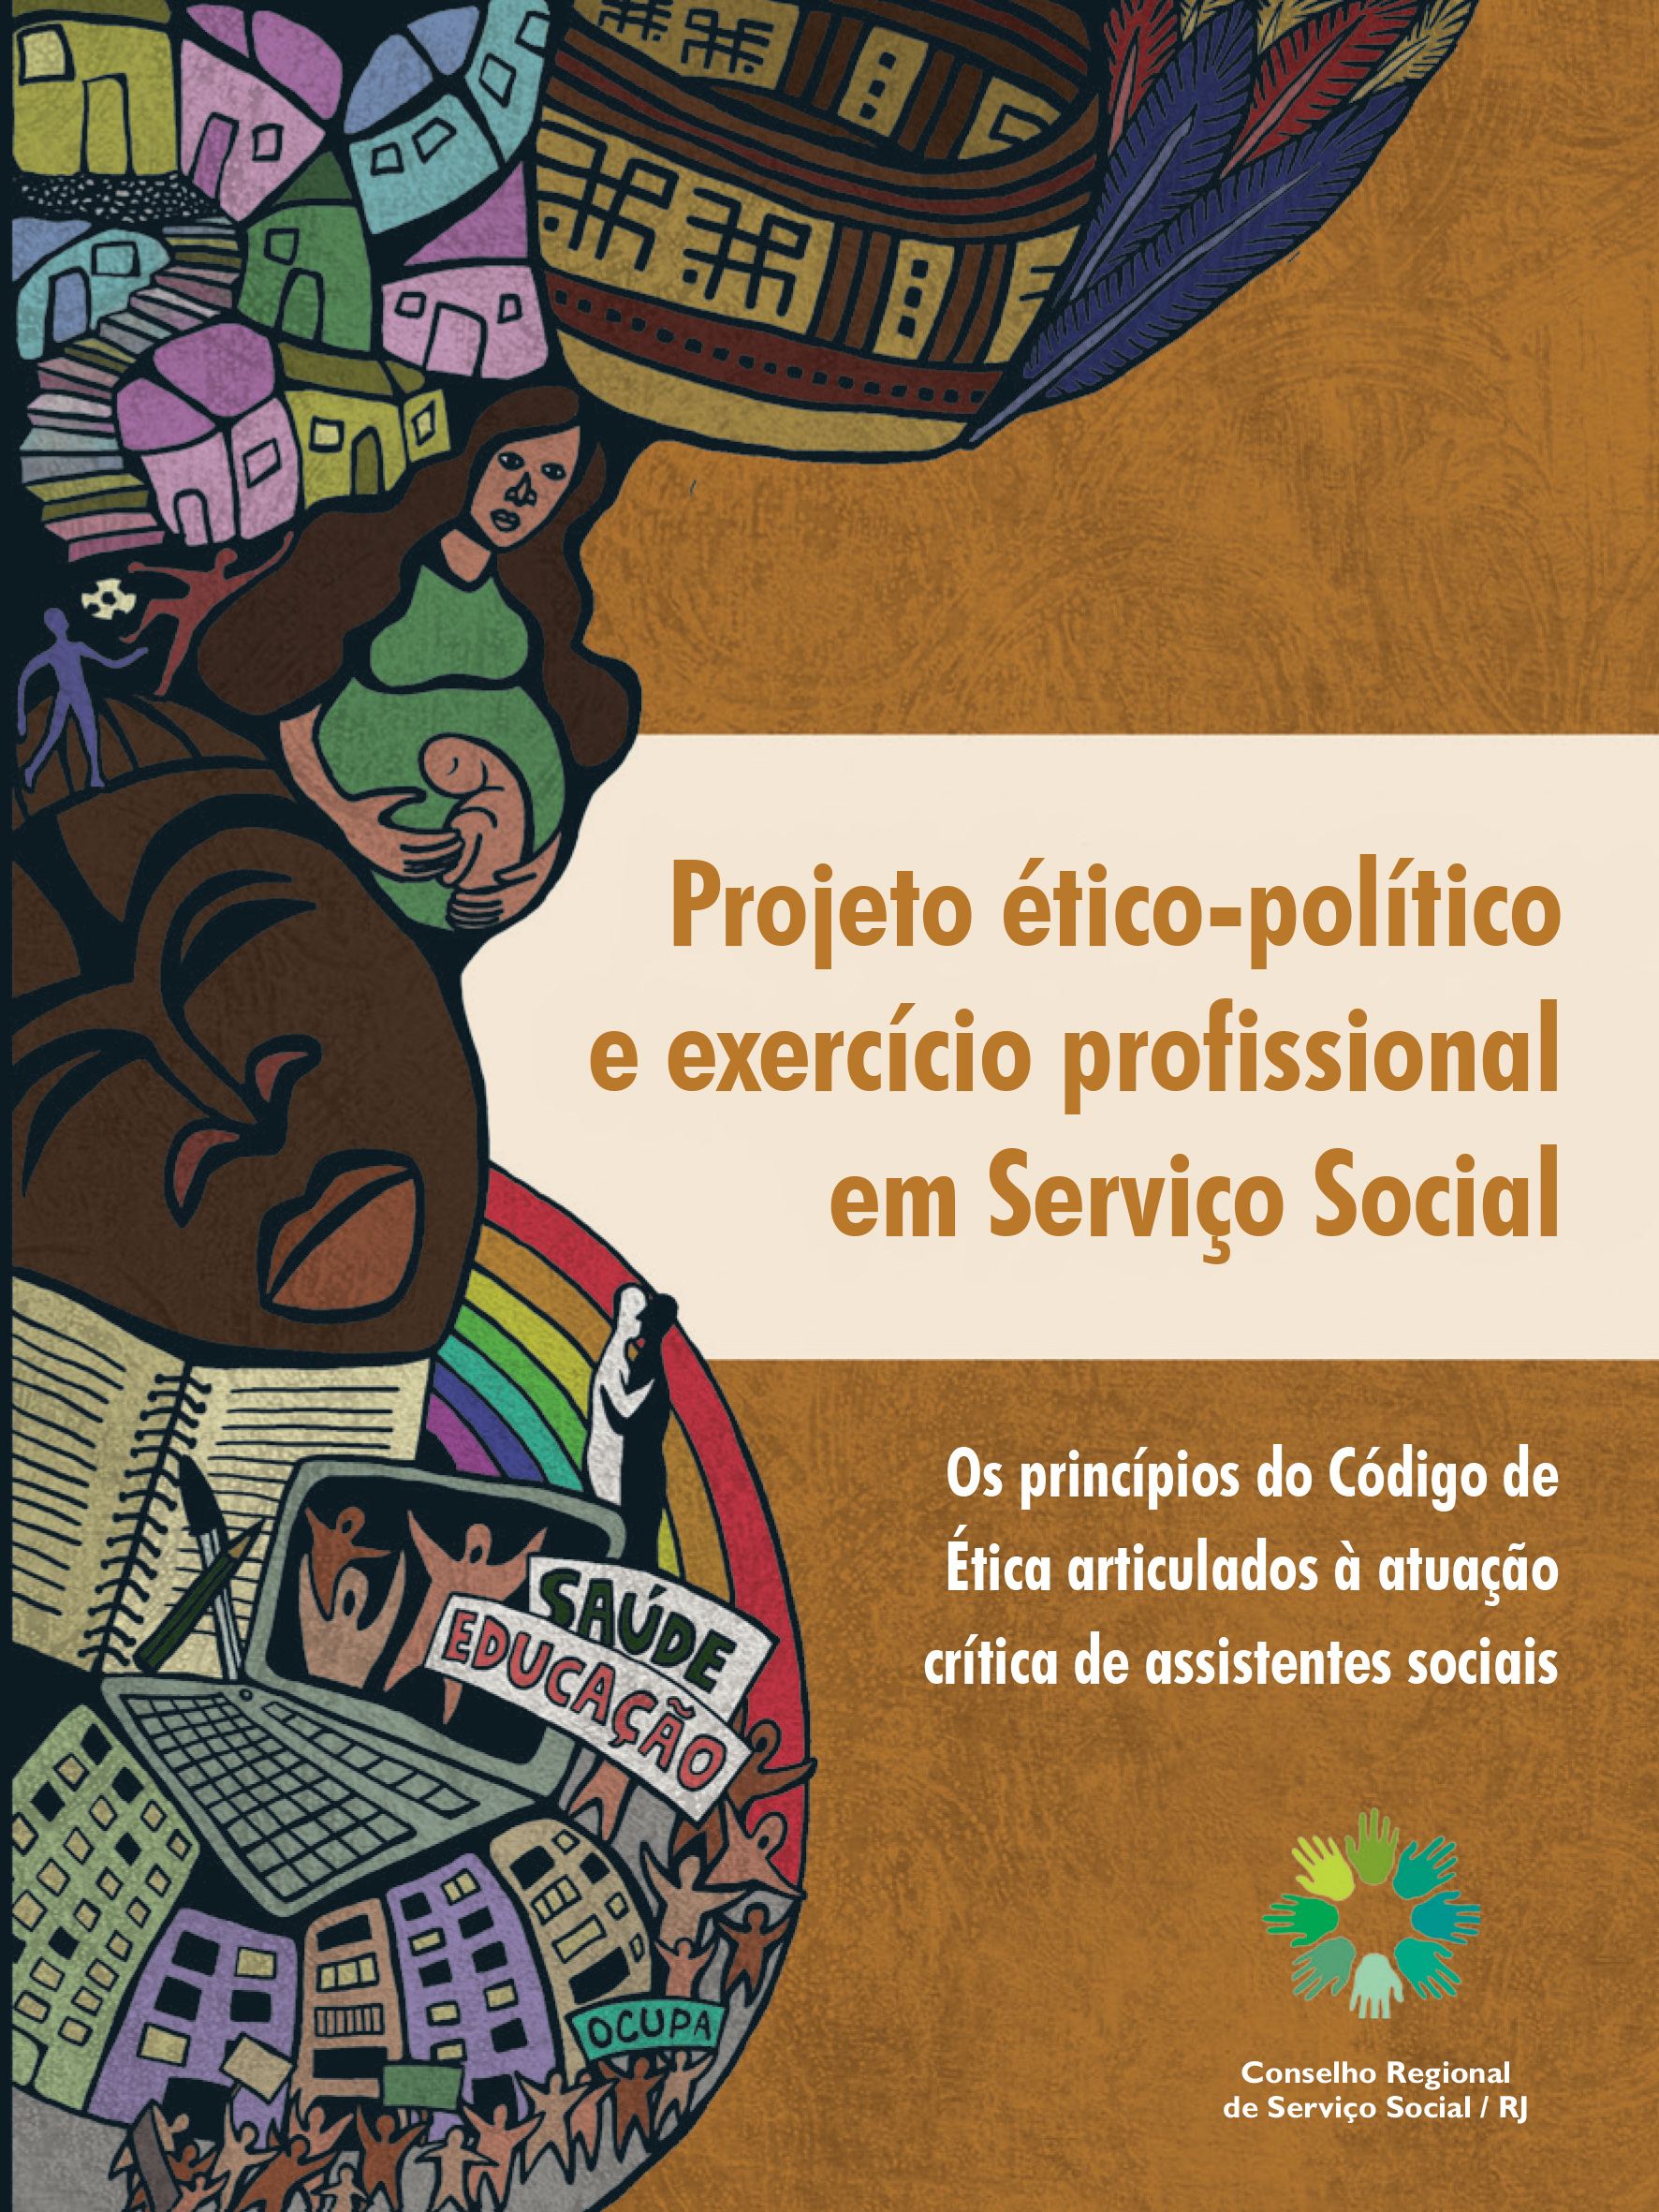 Cress - Redes Sociais, Política e Linguagem: a inserção do serviço social